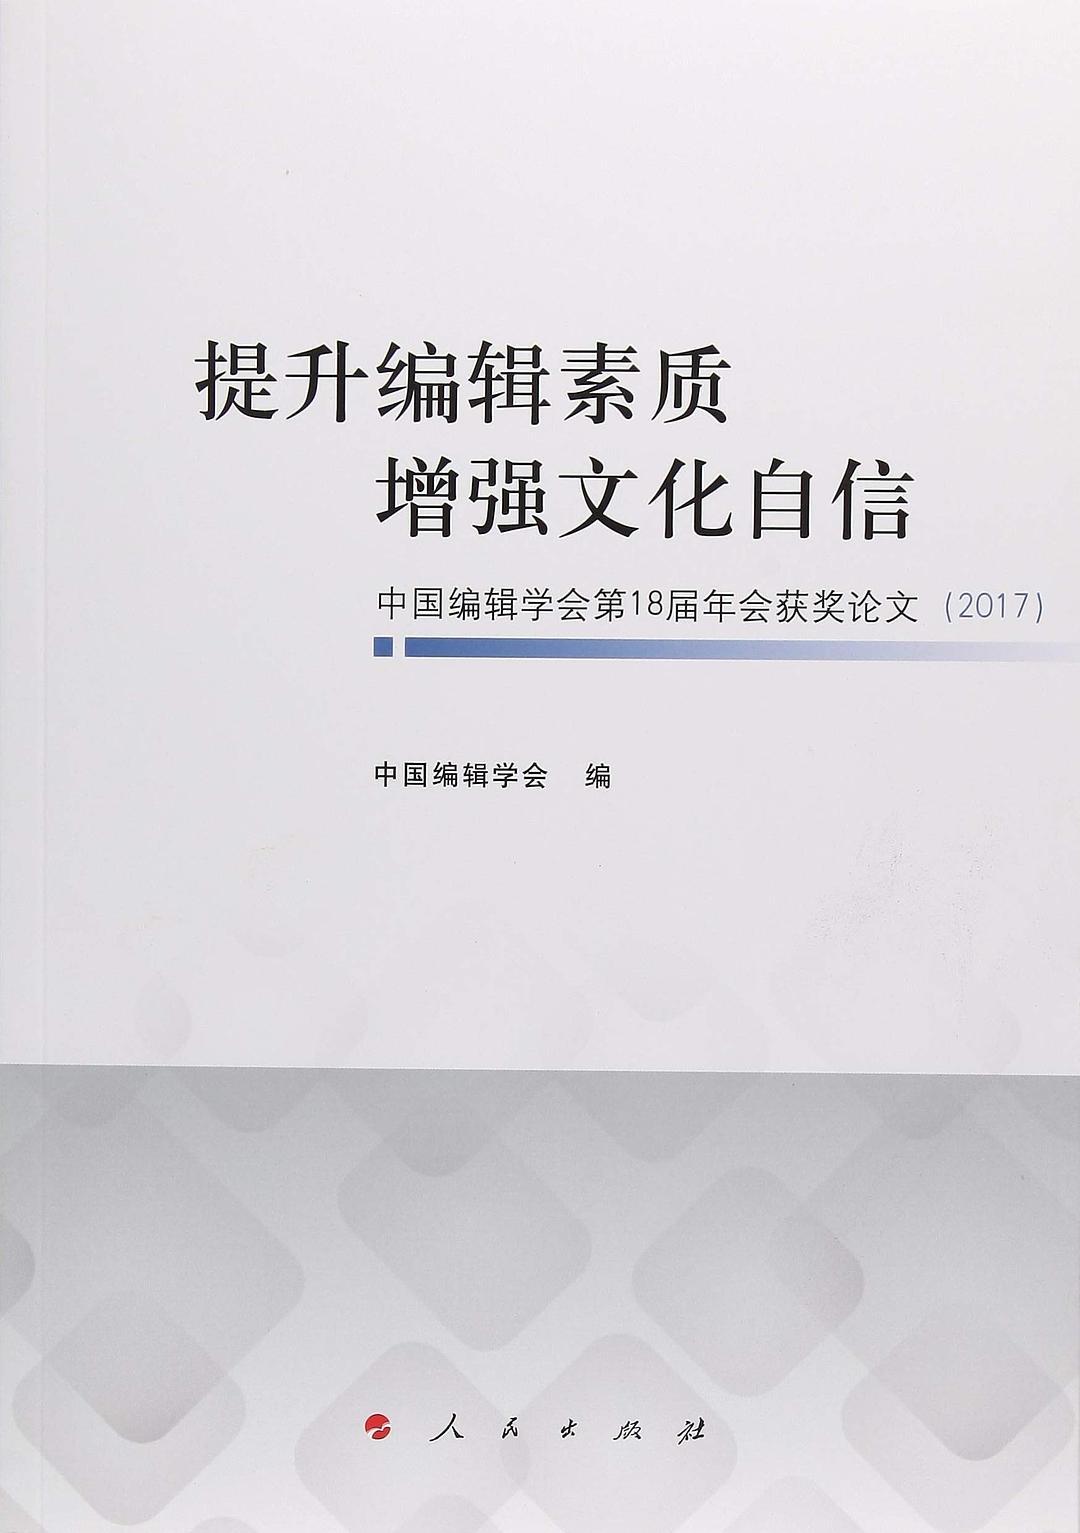 提升编辑素质 增强文化自信——中国编辑学会第18届年会获奖论文（2017）